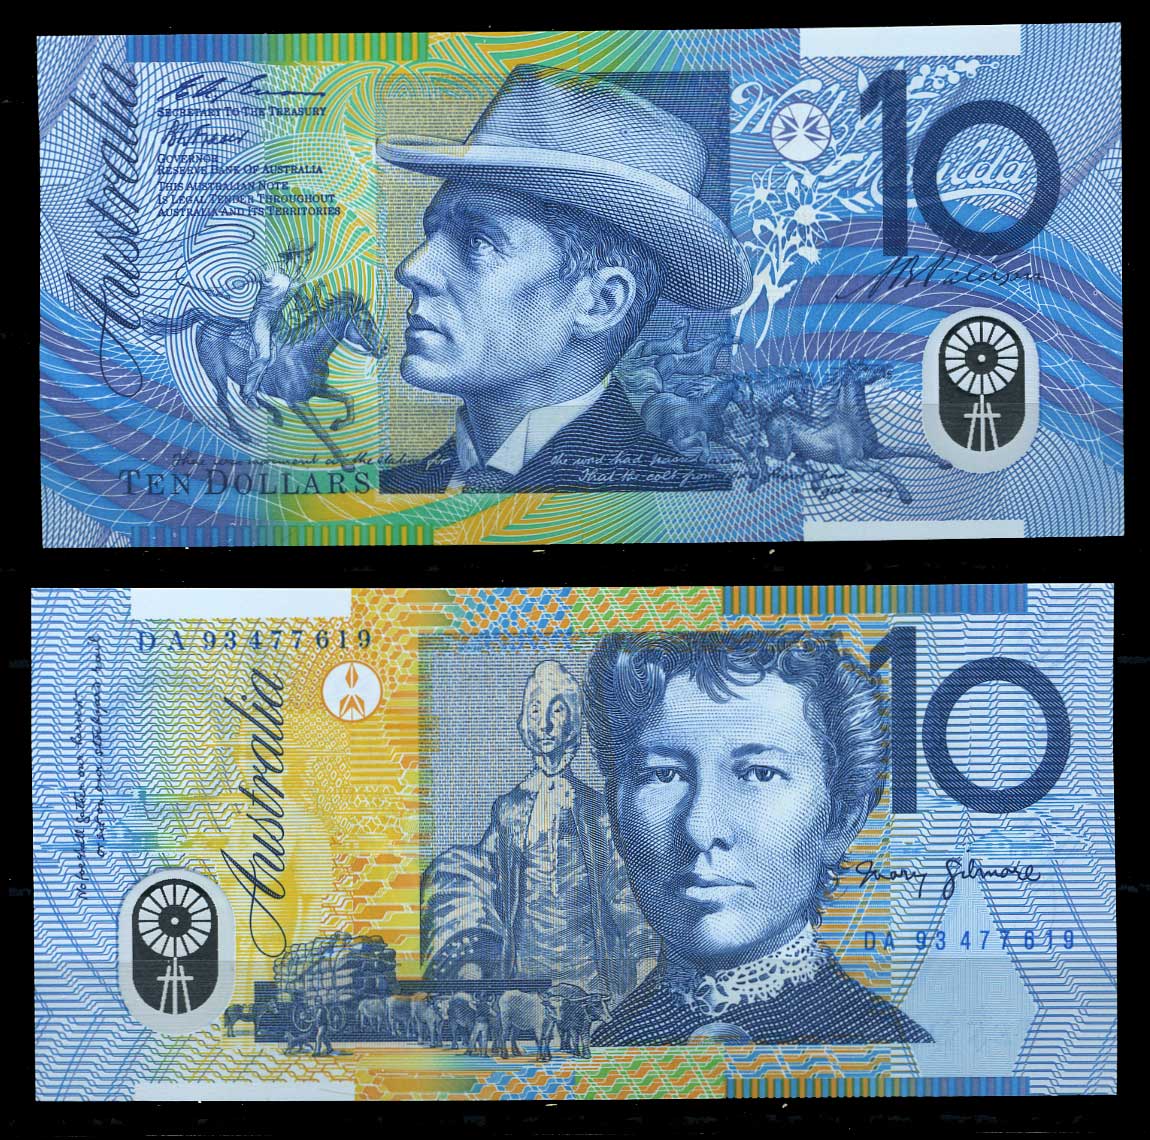 Австралийская валюта. 10 Долларов Австралии. Австралийский доллар купюры. Купюры австралийский долар. Пластиковые купюры в Австралии.